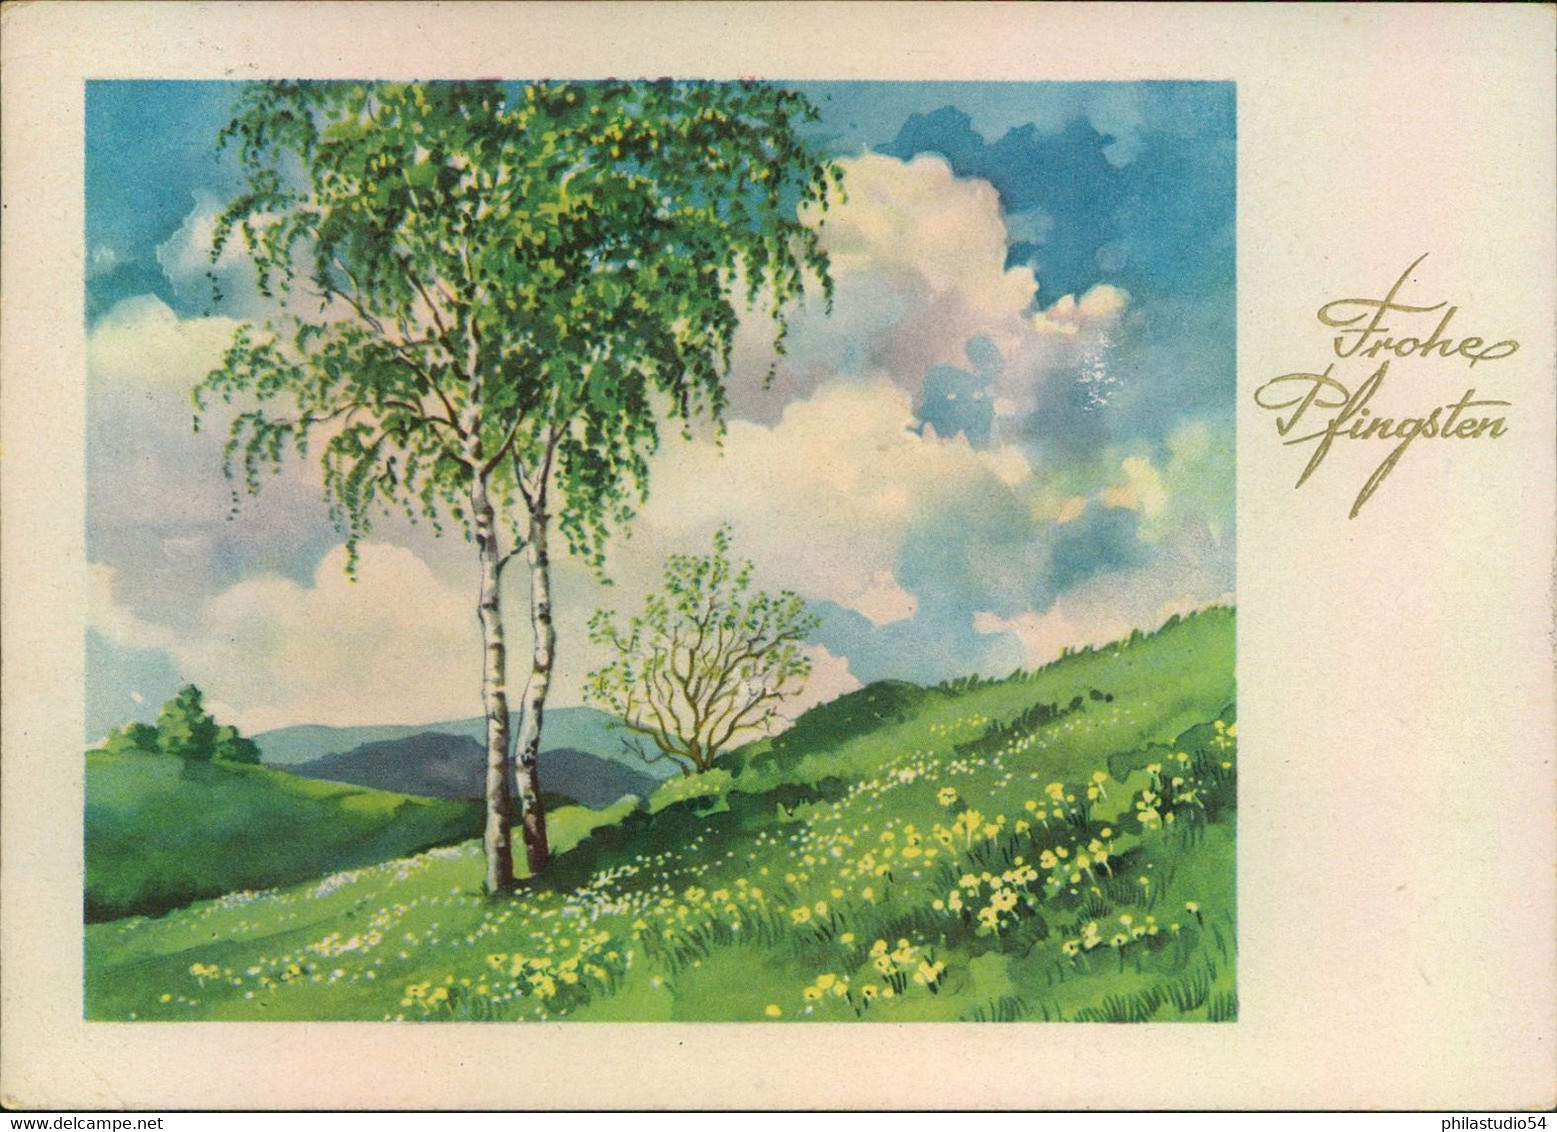 1954, 20 Pf. Fünfjagresplan Auf Postkarte In Die Schweiz - Covers & Documents